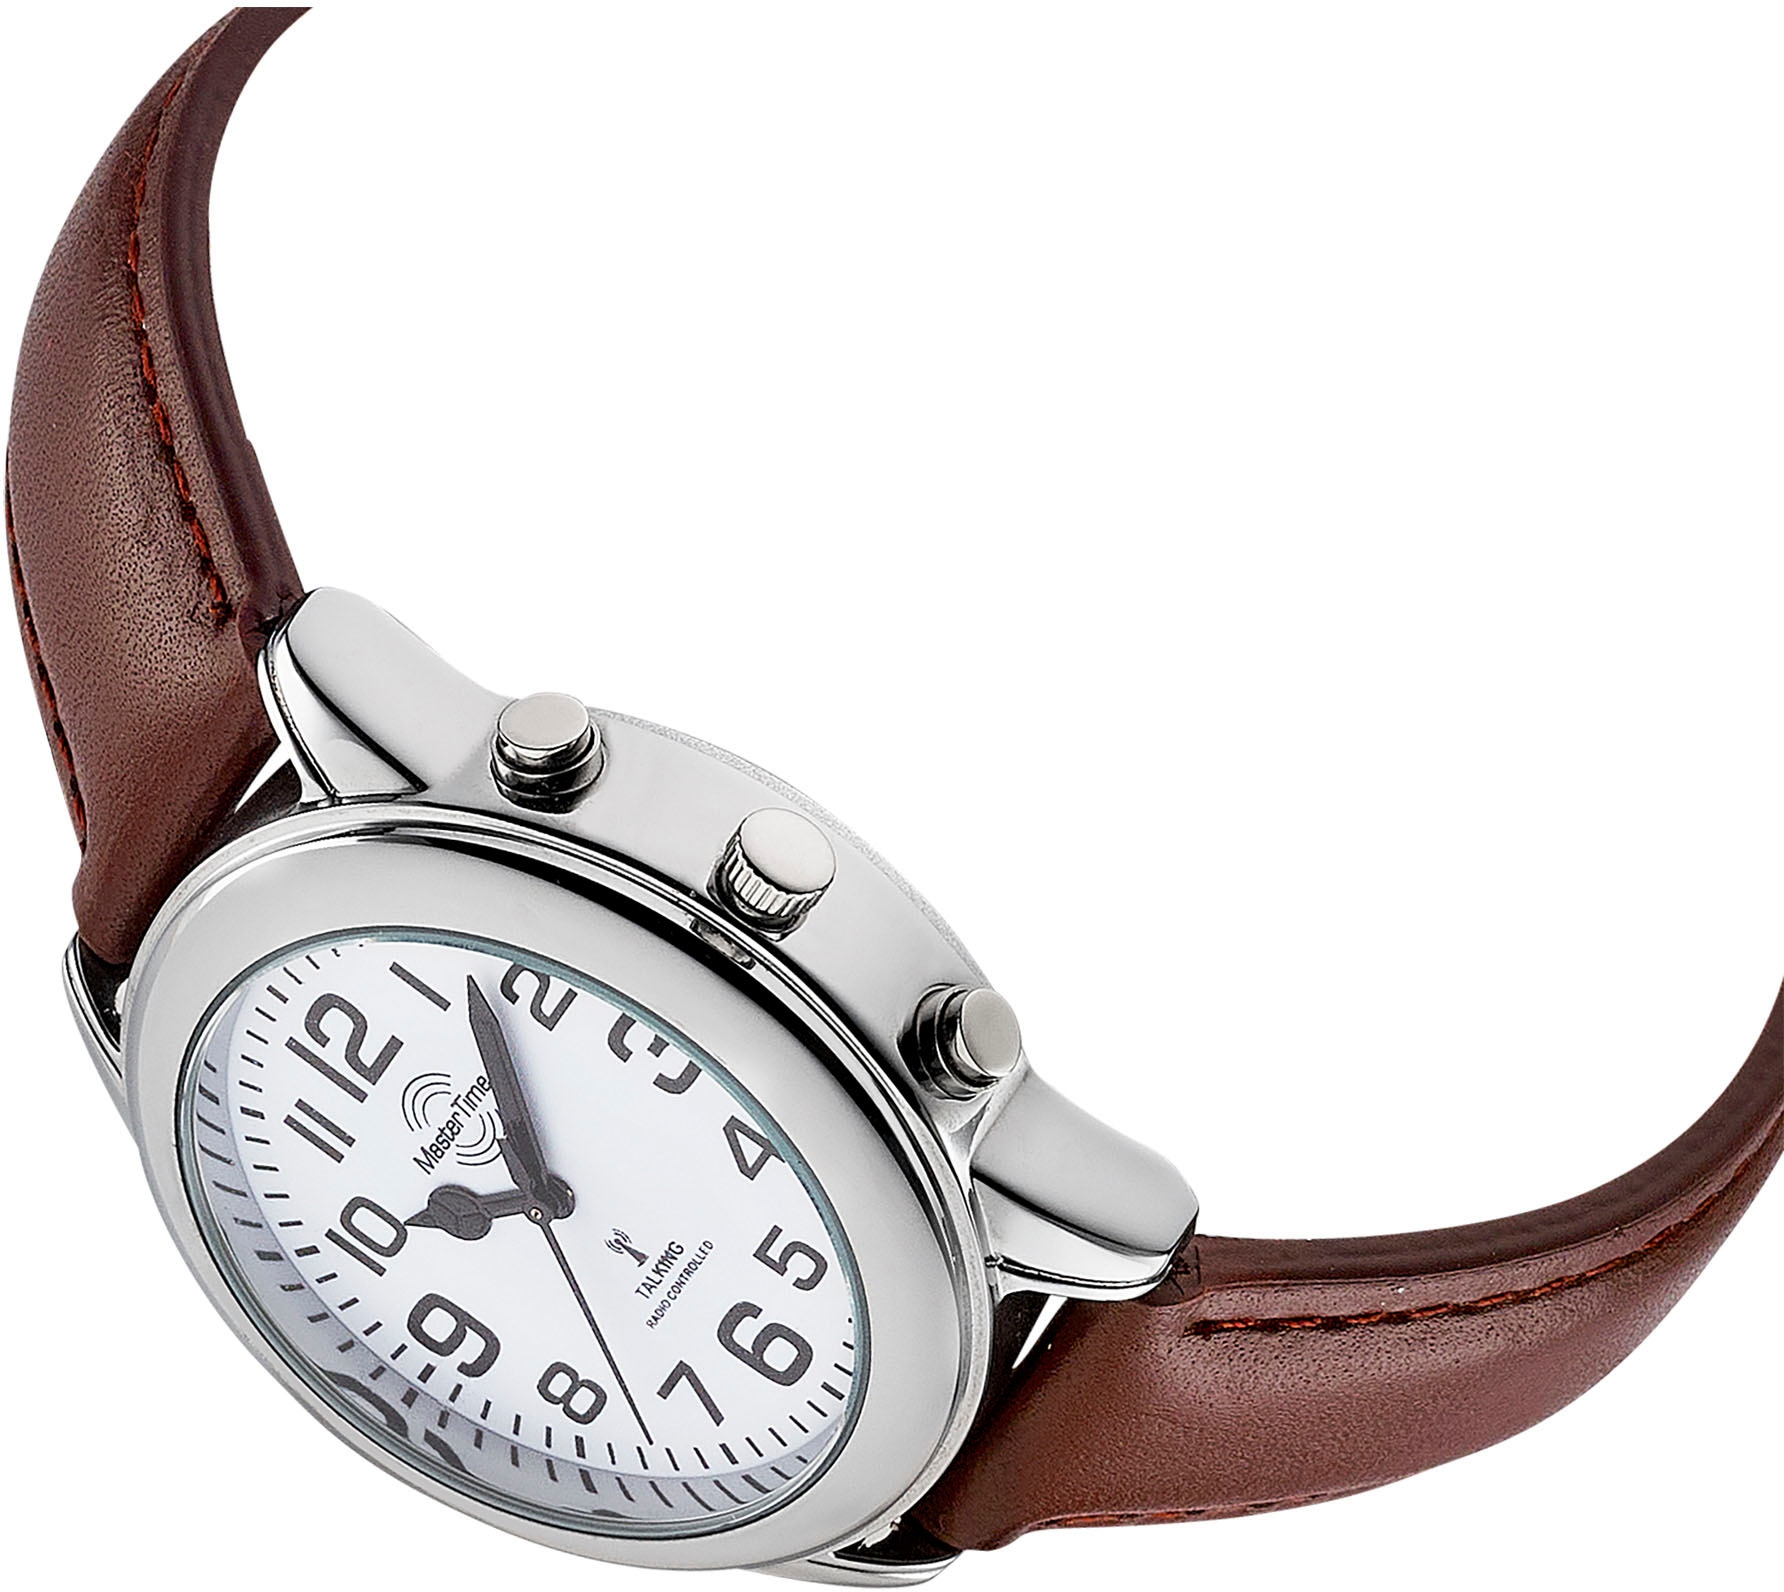 MASTER TIME Funkuhr »Sprechende Uhr, MTGA-10806-12L« online kaufen